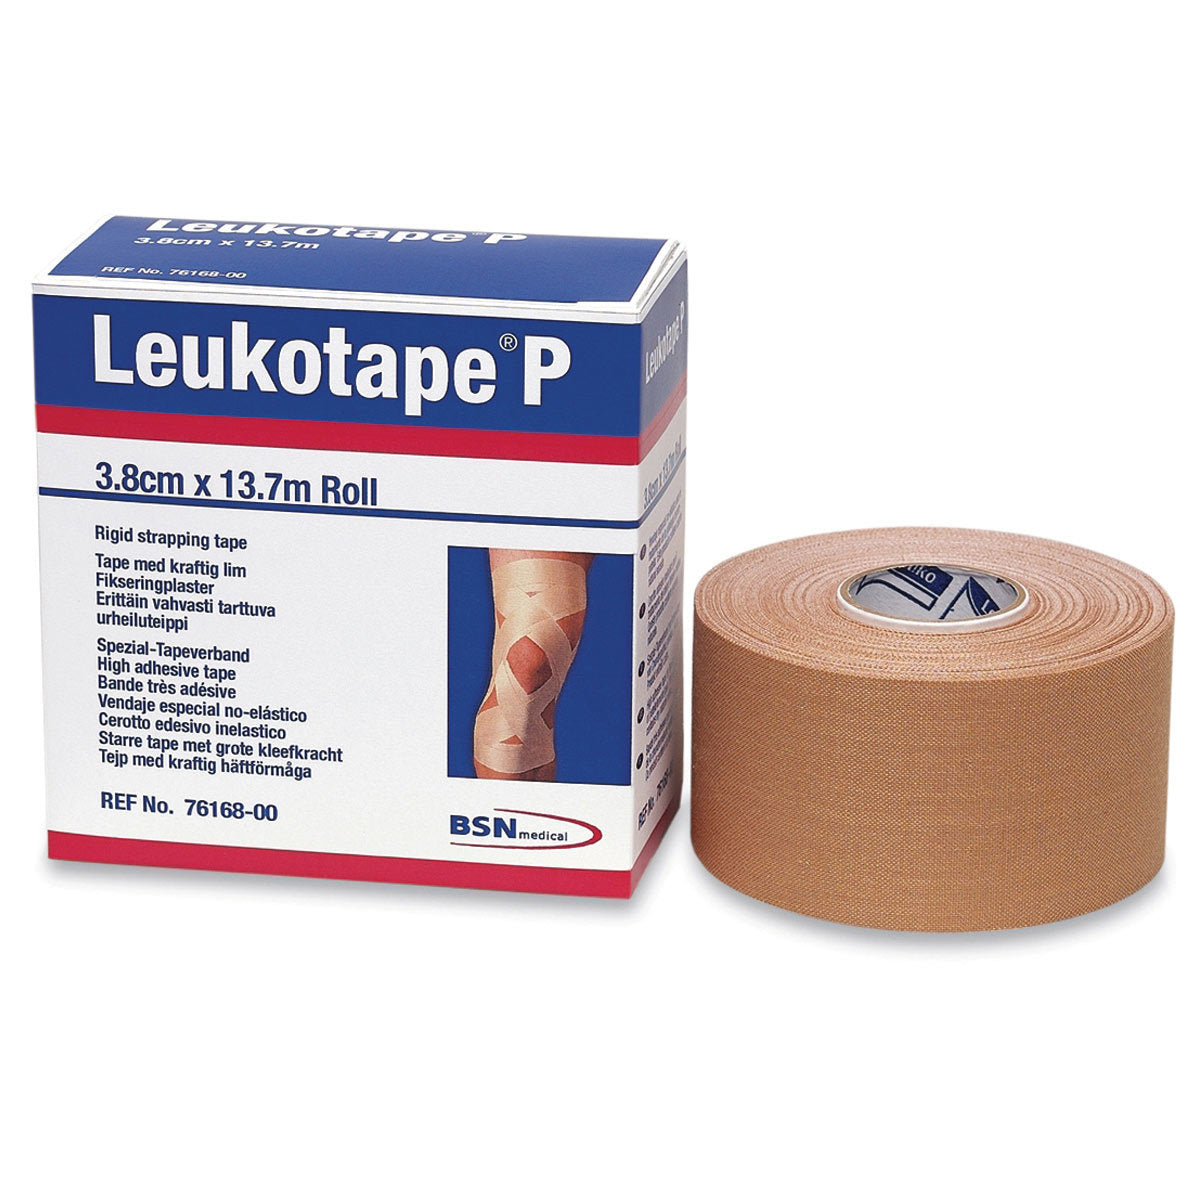 Leukotape P - physio supplies canada